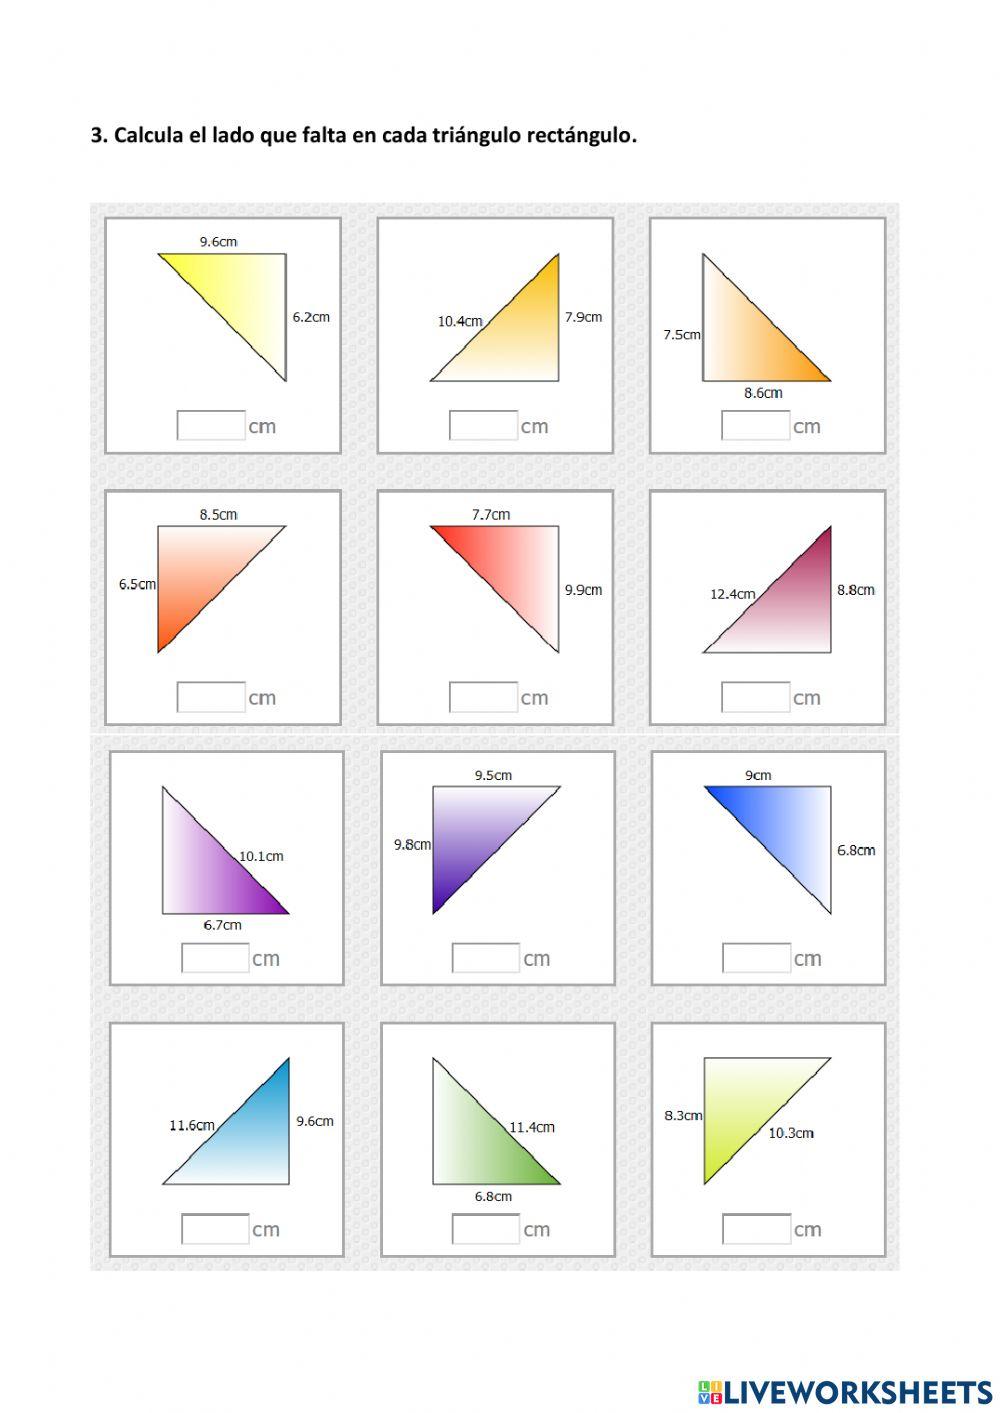 Leccion triangulos y teorema de pitagoras